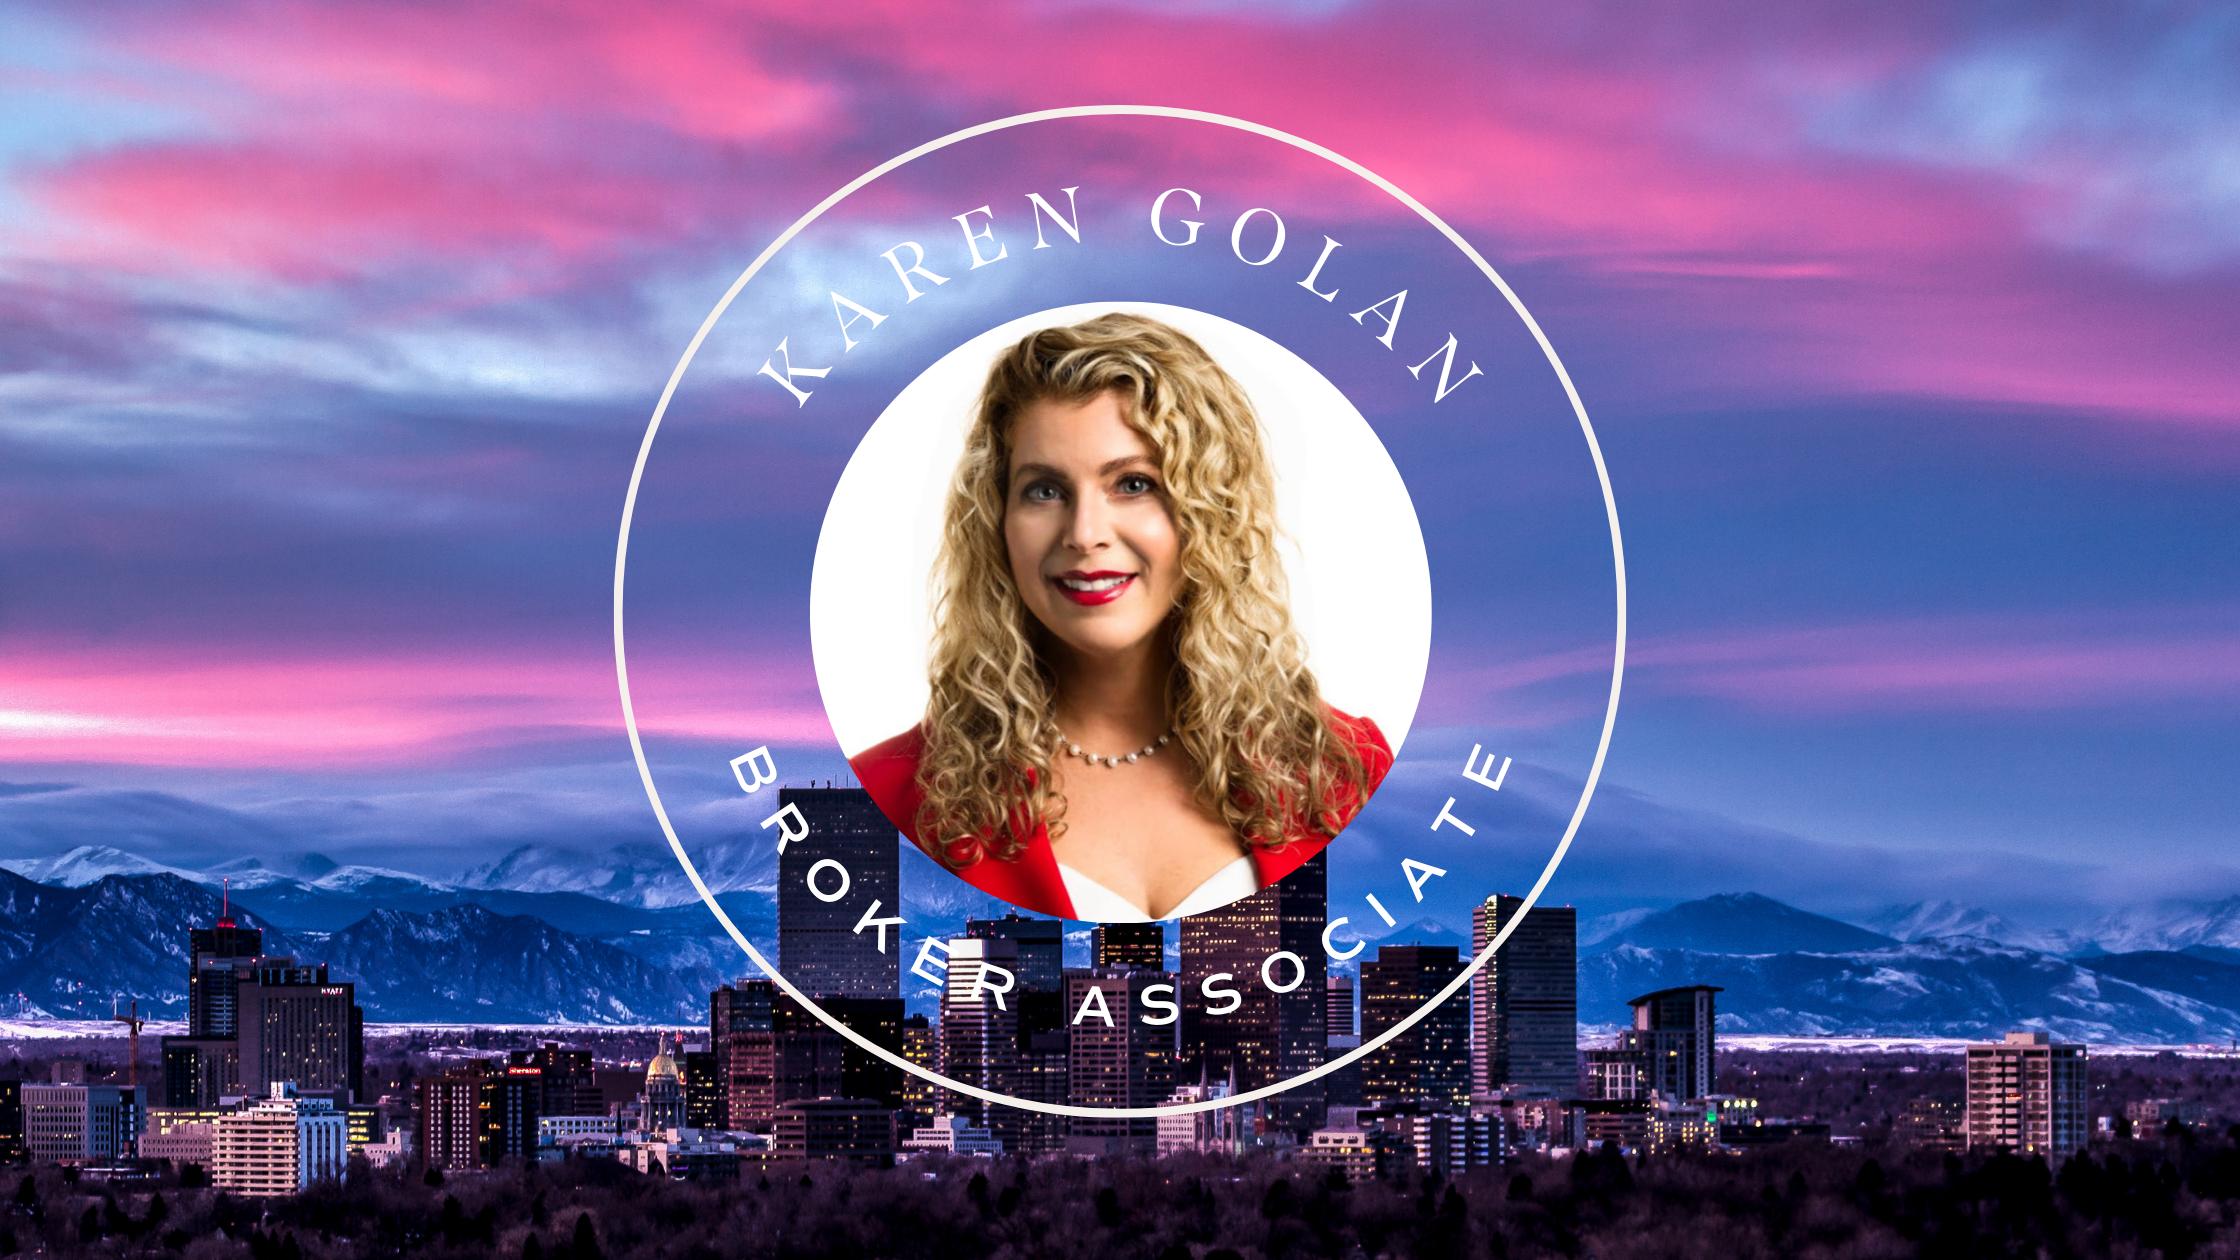 Karen Golan Real Estate Agent Denver